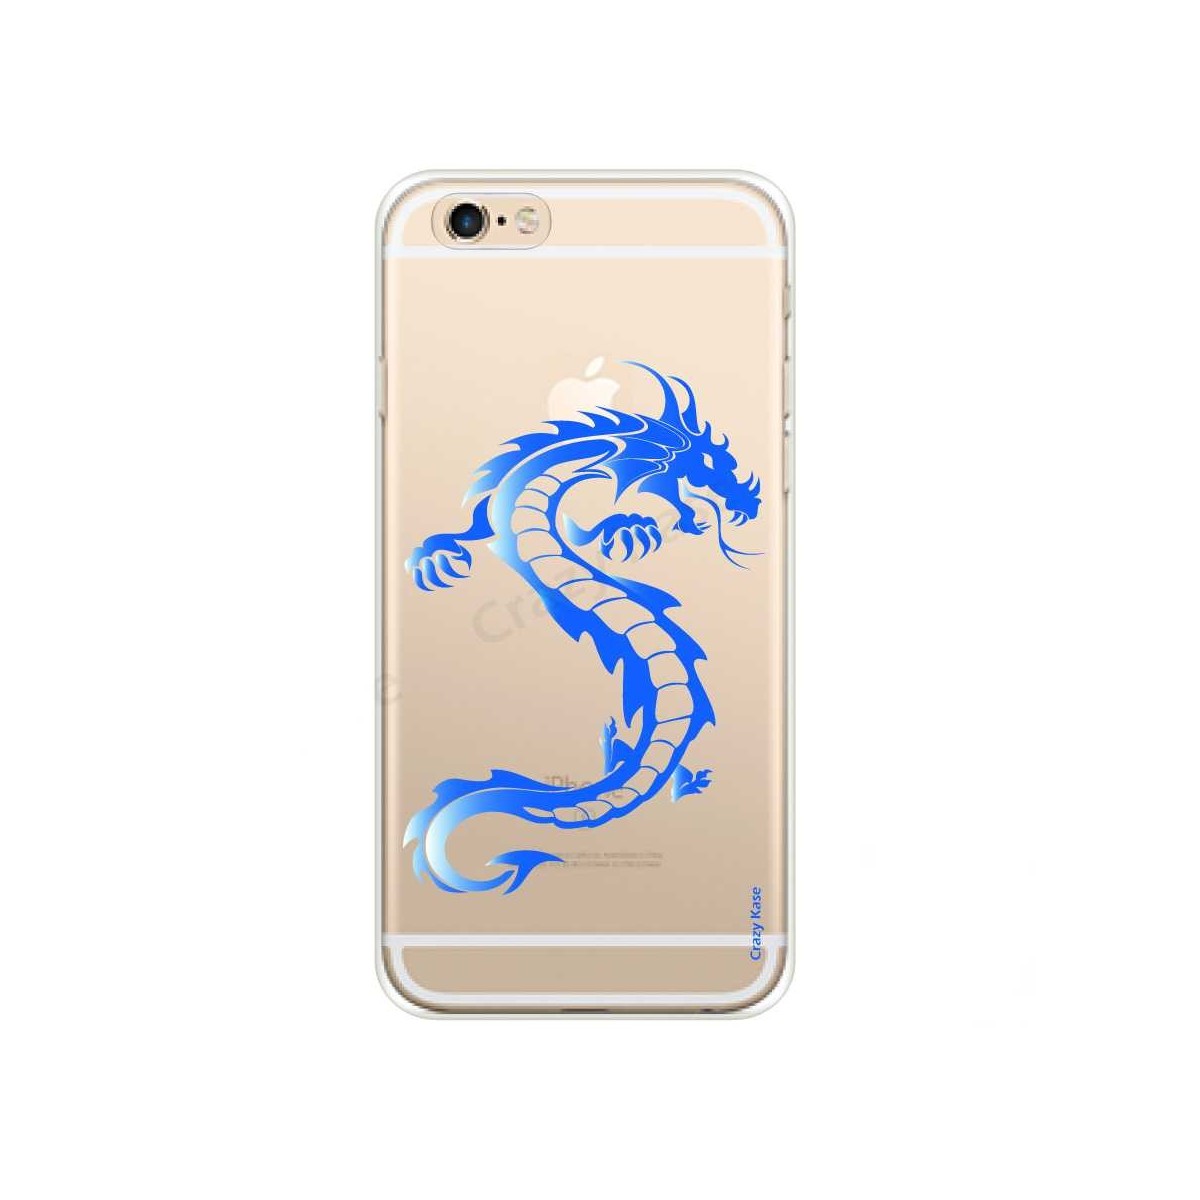 Coque iPhone 6 / 6s souple Dragon bleu - Crazy Kase